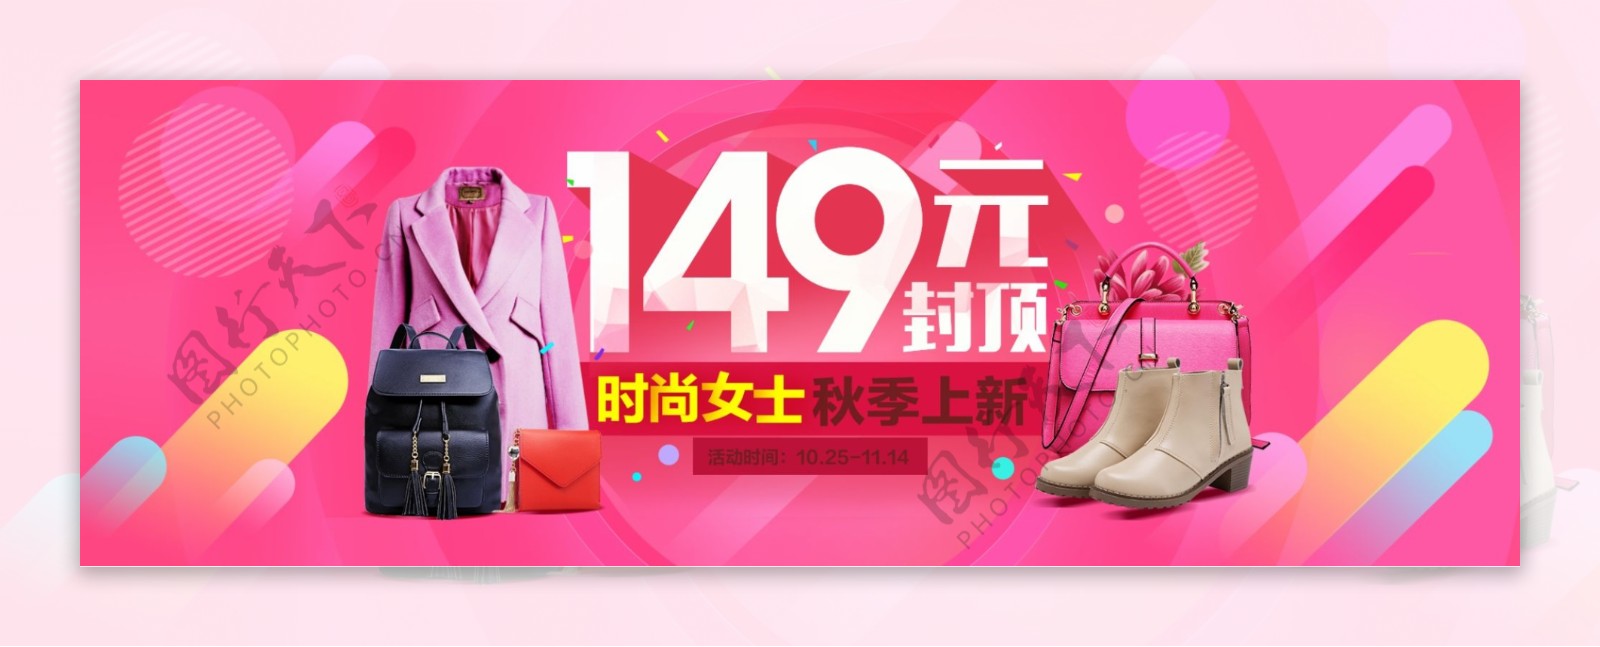 时尚女士秋季上新电商淘宝活动促销海报模板banner设计